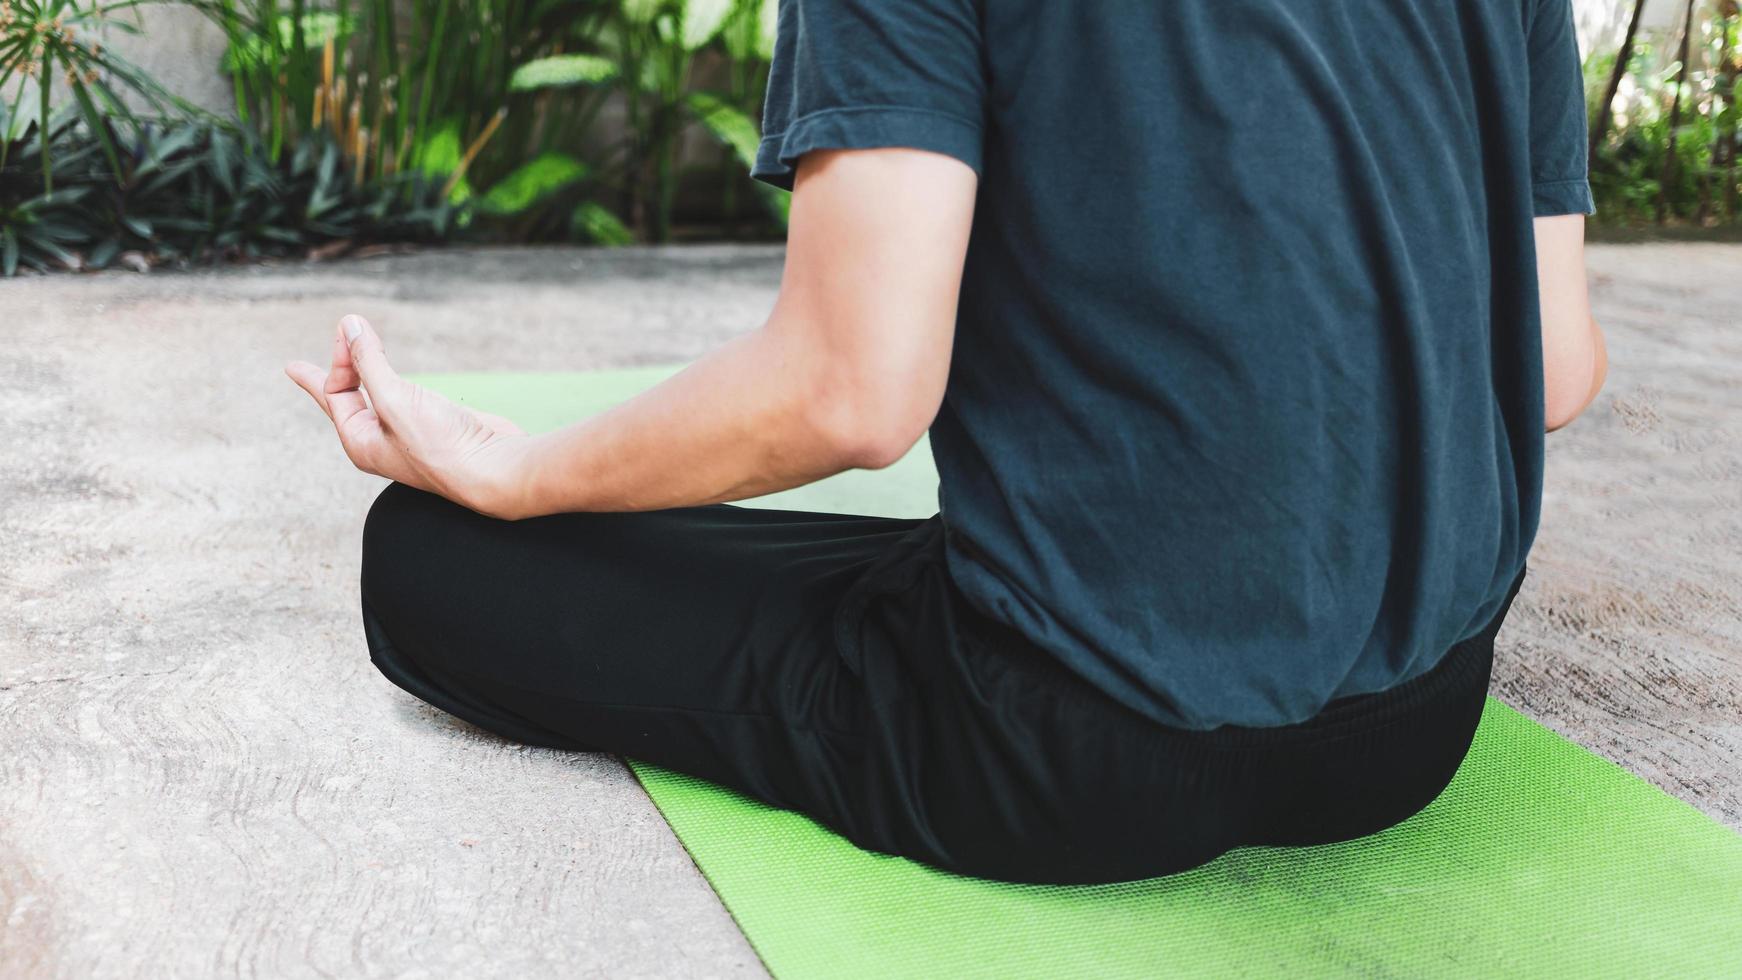 jong Aziatisch Mens beoefenen yoga, ademen, meditatie, adha oefening, padmasana, voor de helft lotus houding met modder houding Aan de groen yoga mat. oefening in de tuin.gezond leven concept foto